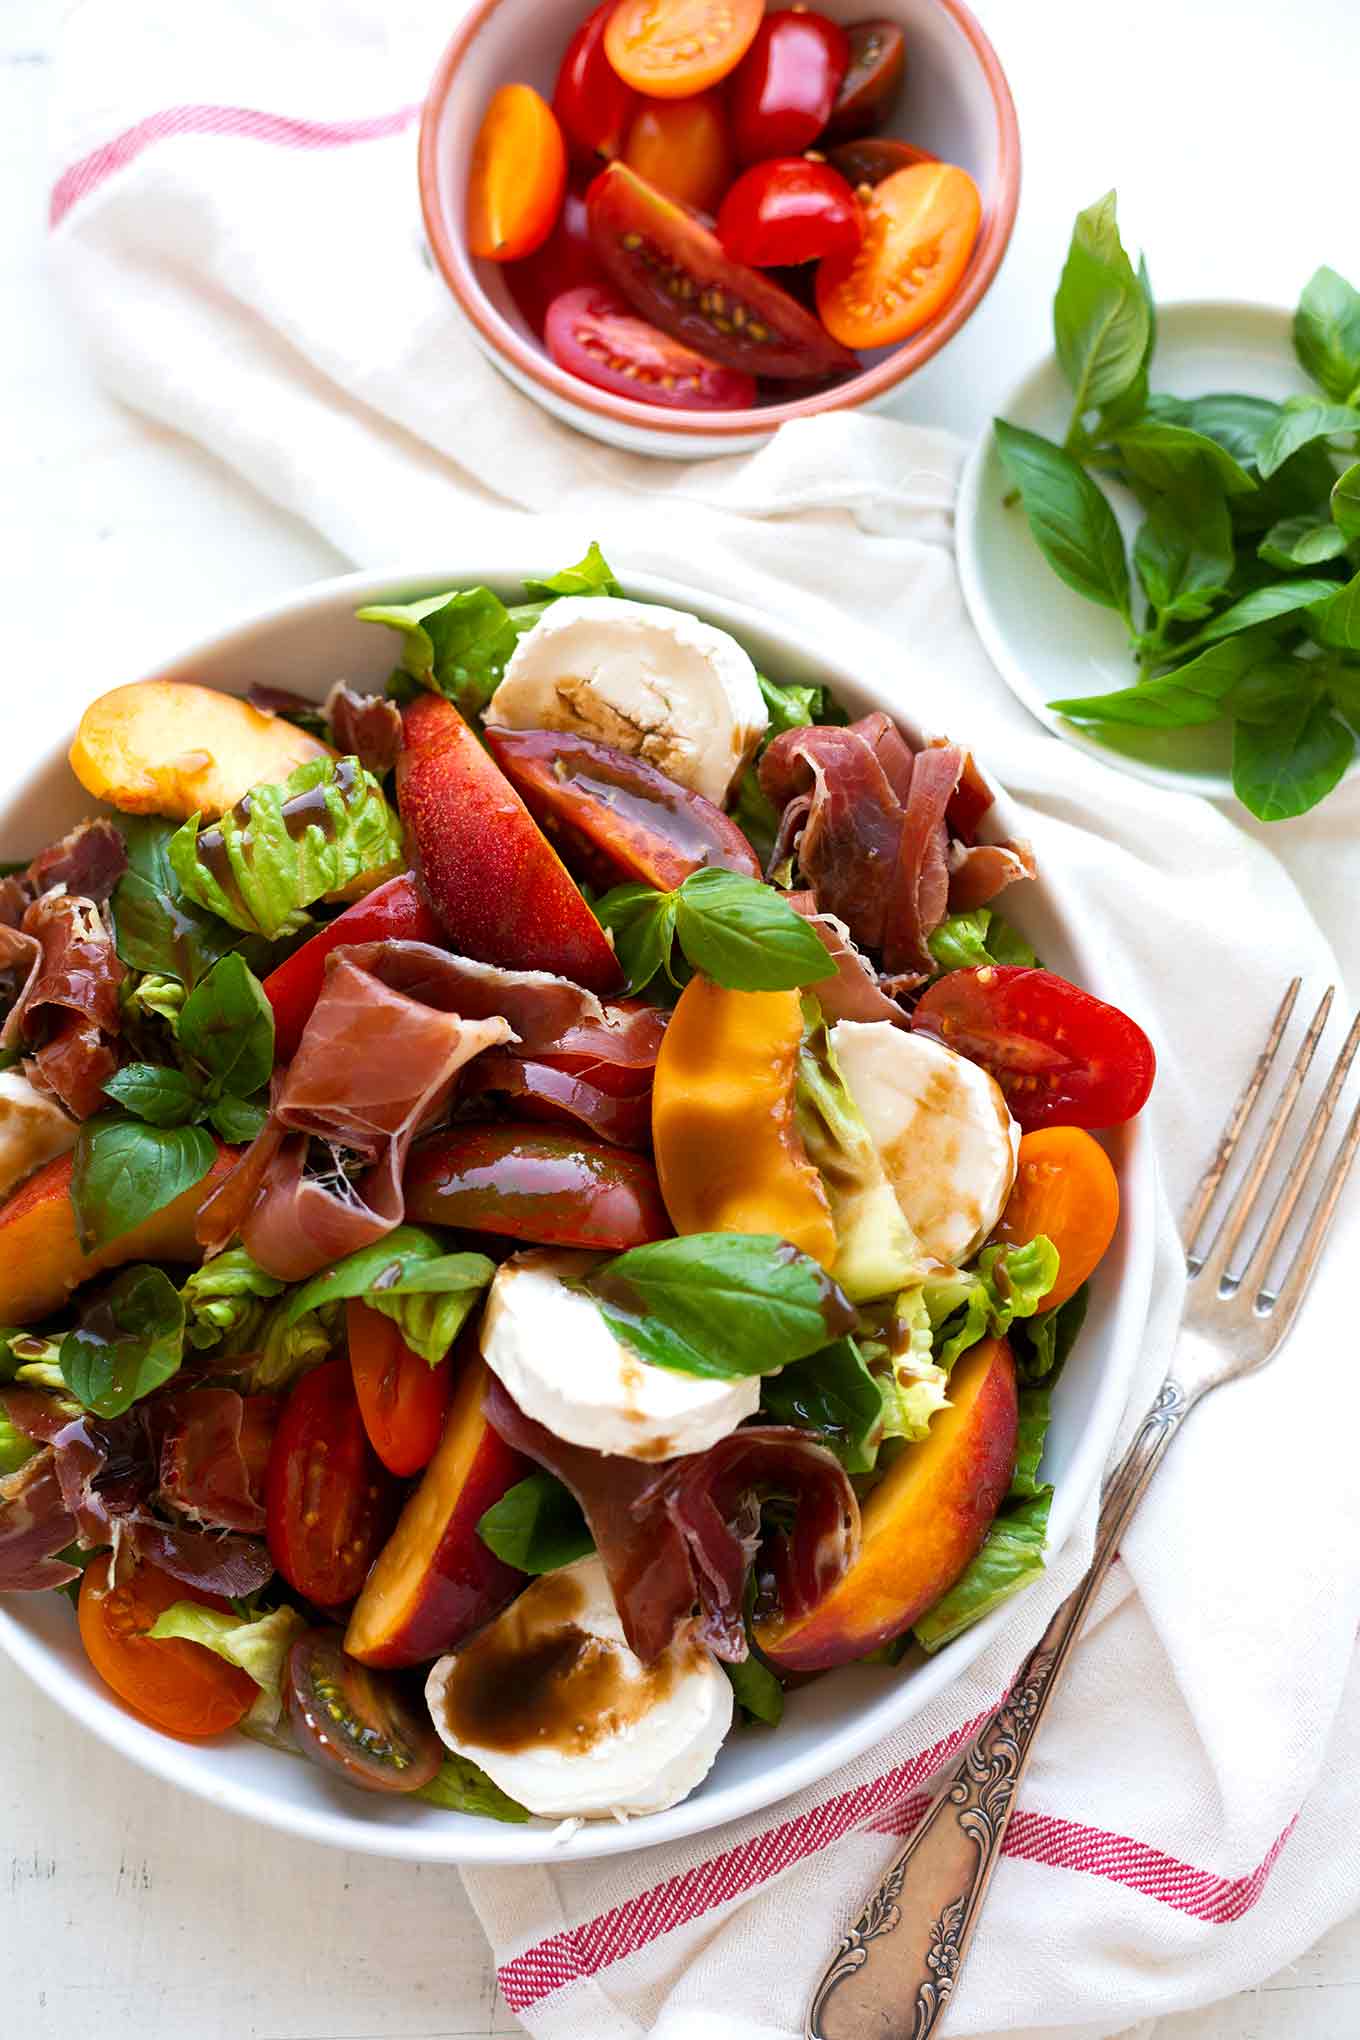 Sommerlicher Nektarinen-Ziegenkäse-Salat mit bunten Tomaten. Dieses leckere Salat-Rezept ist einfach, richtig beeindruckend und erfordert nur 20 Minuten Zeit! - Kochkarussell.com #salat #nektarinen #ziegenkäse #rezept #kochkarussell